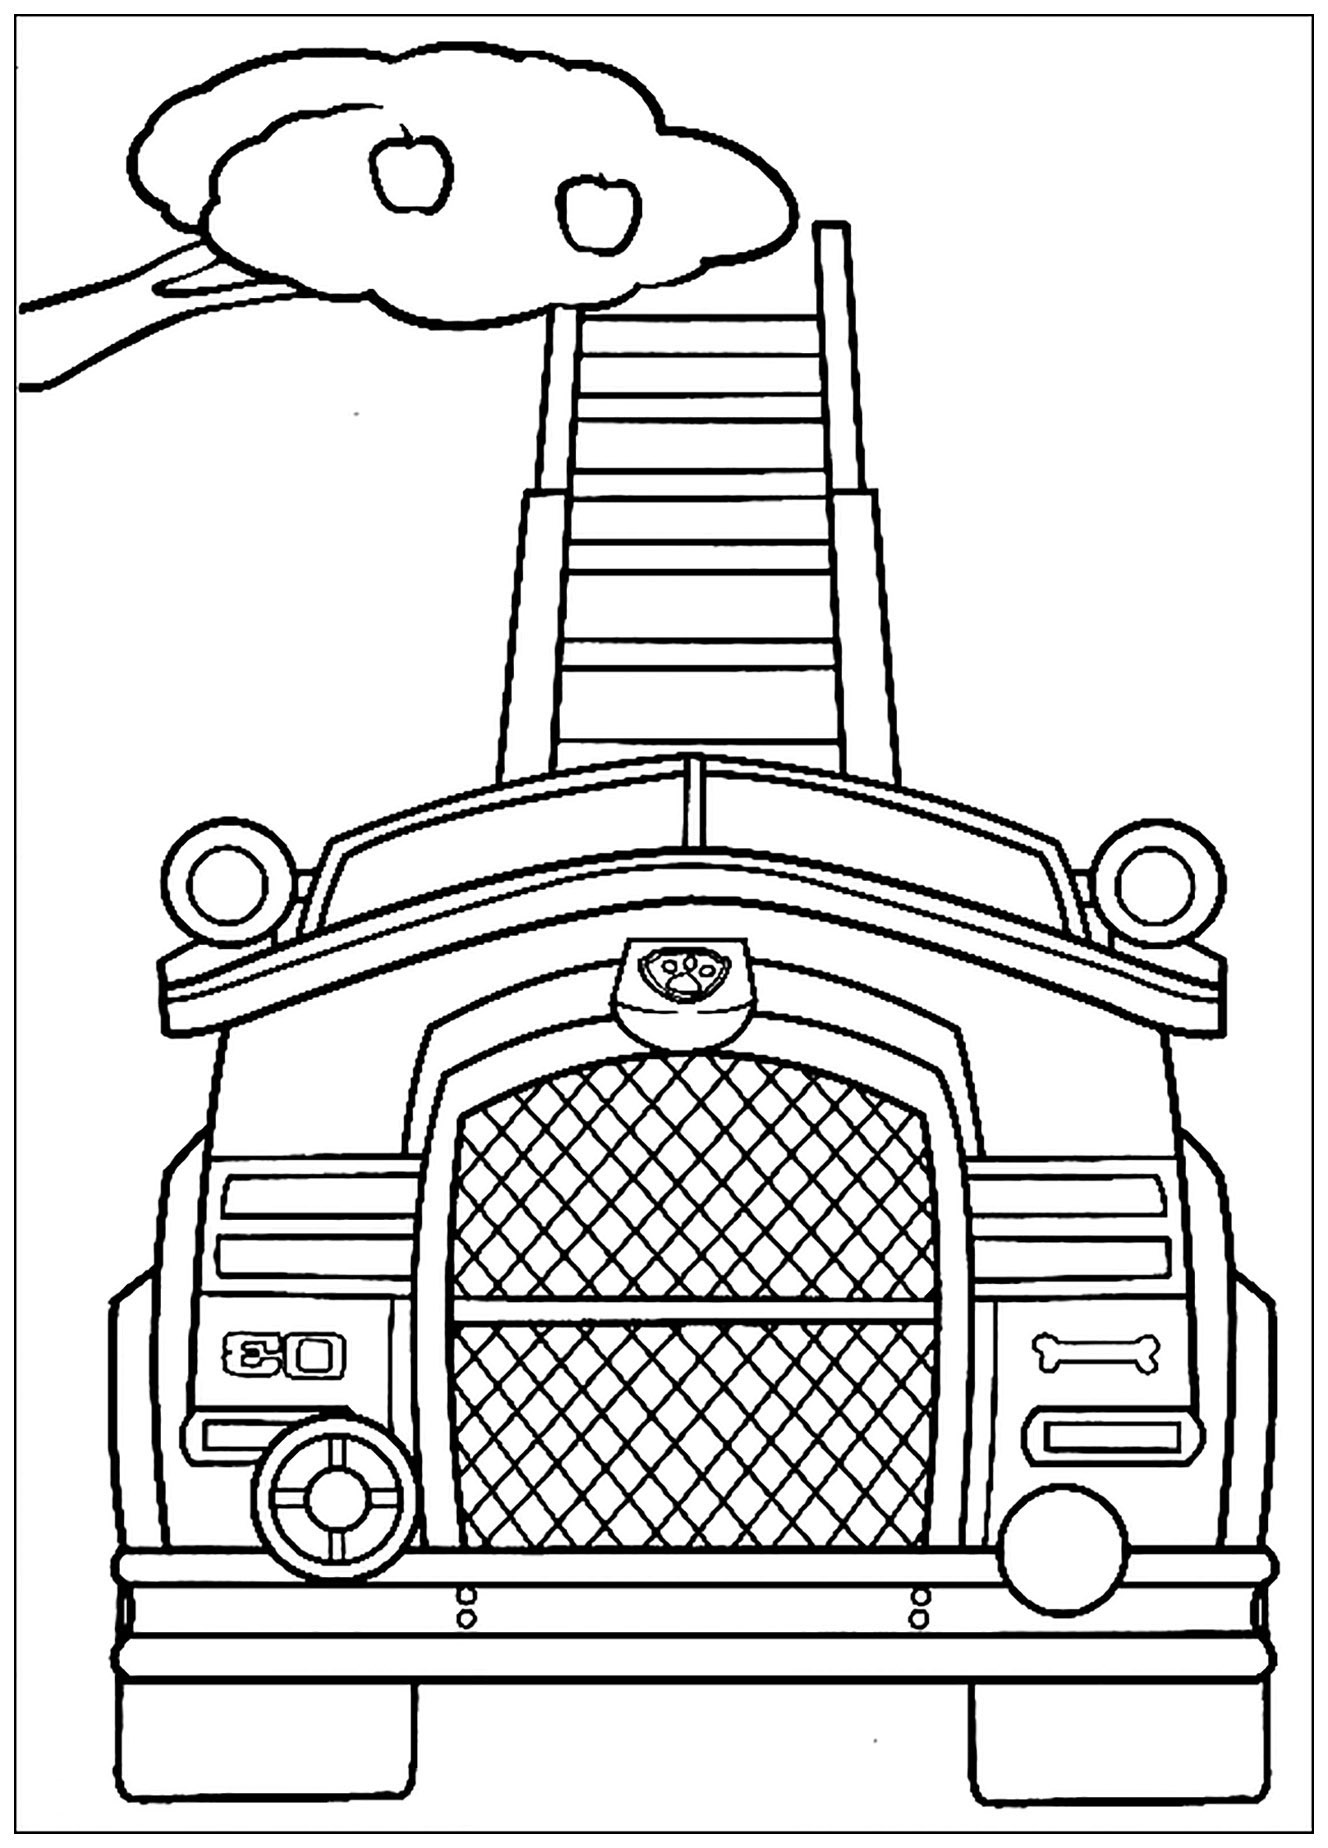 Desenho de patrulha PAW para colorir, fácil para crianças: veículo de colheita